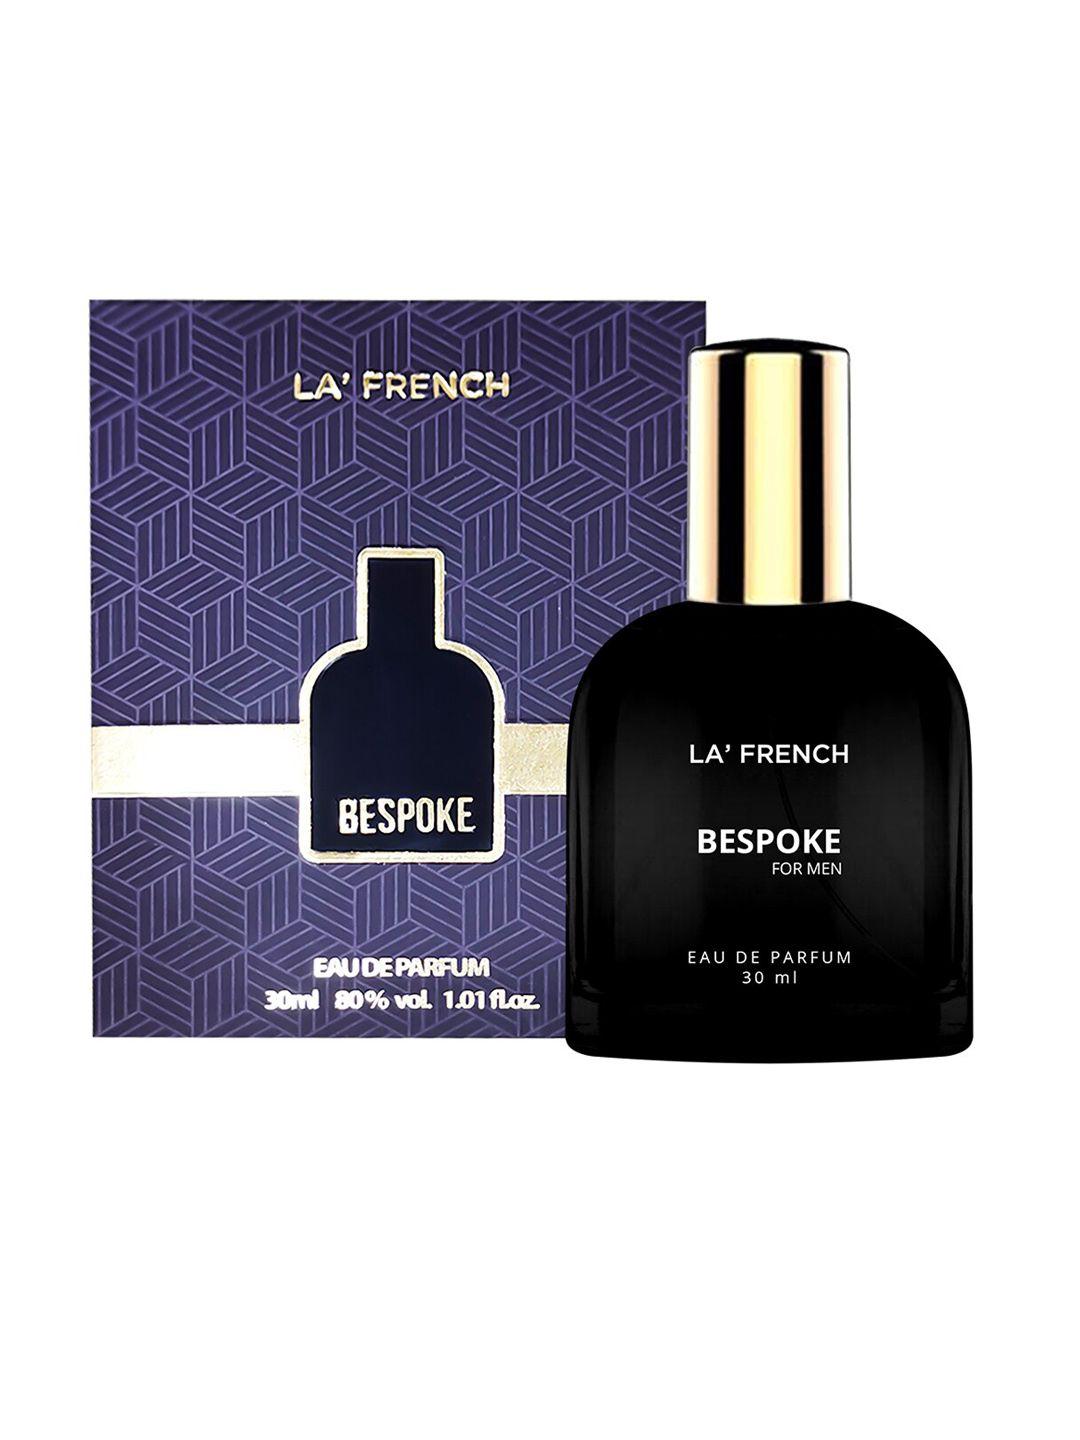 la french men 2-pcs bespoke & hitched long lasting eau de parfum - 30ml each